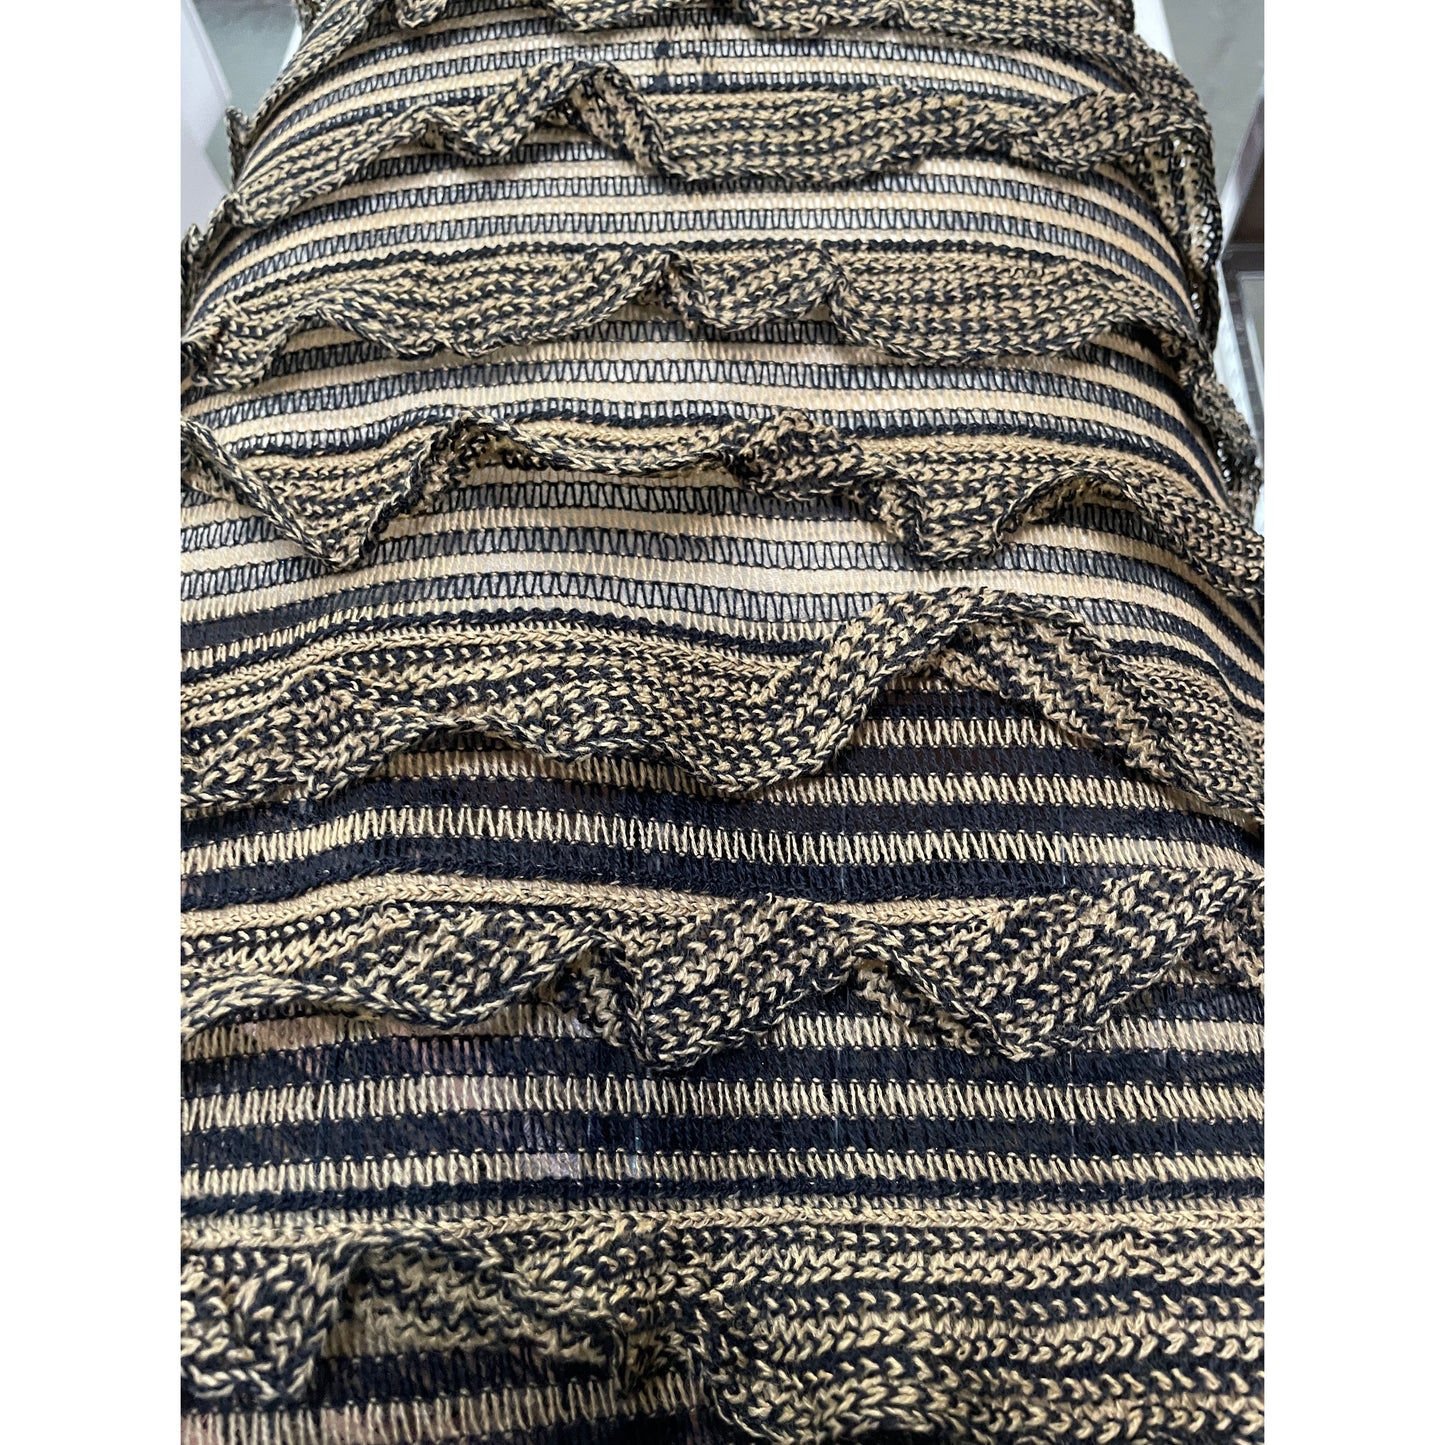 Razi ruffle knit (fabric)